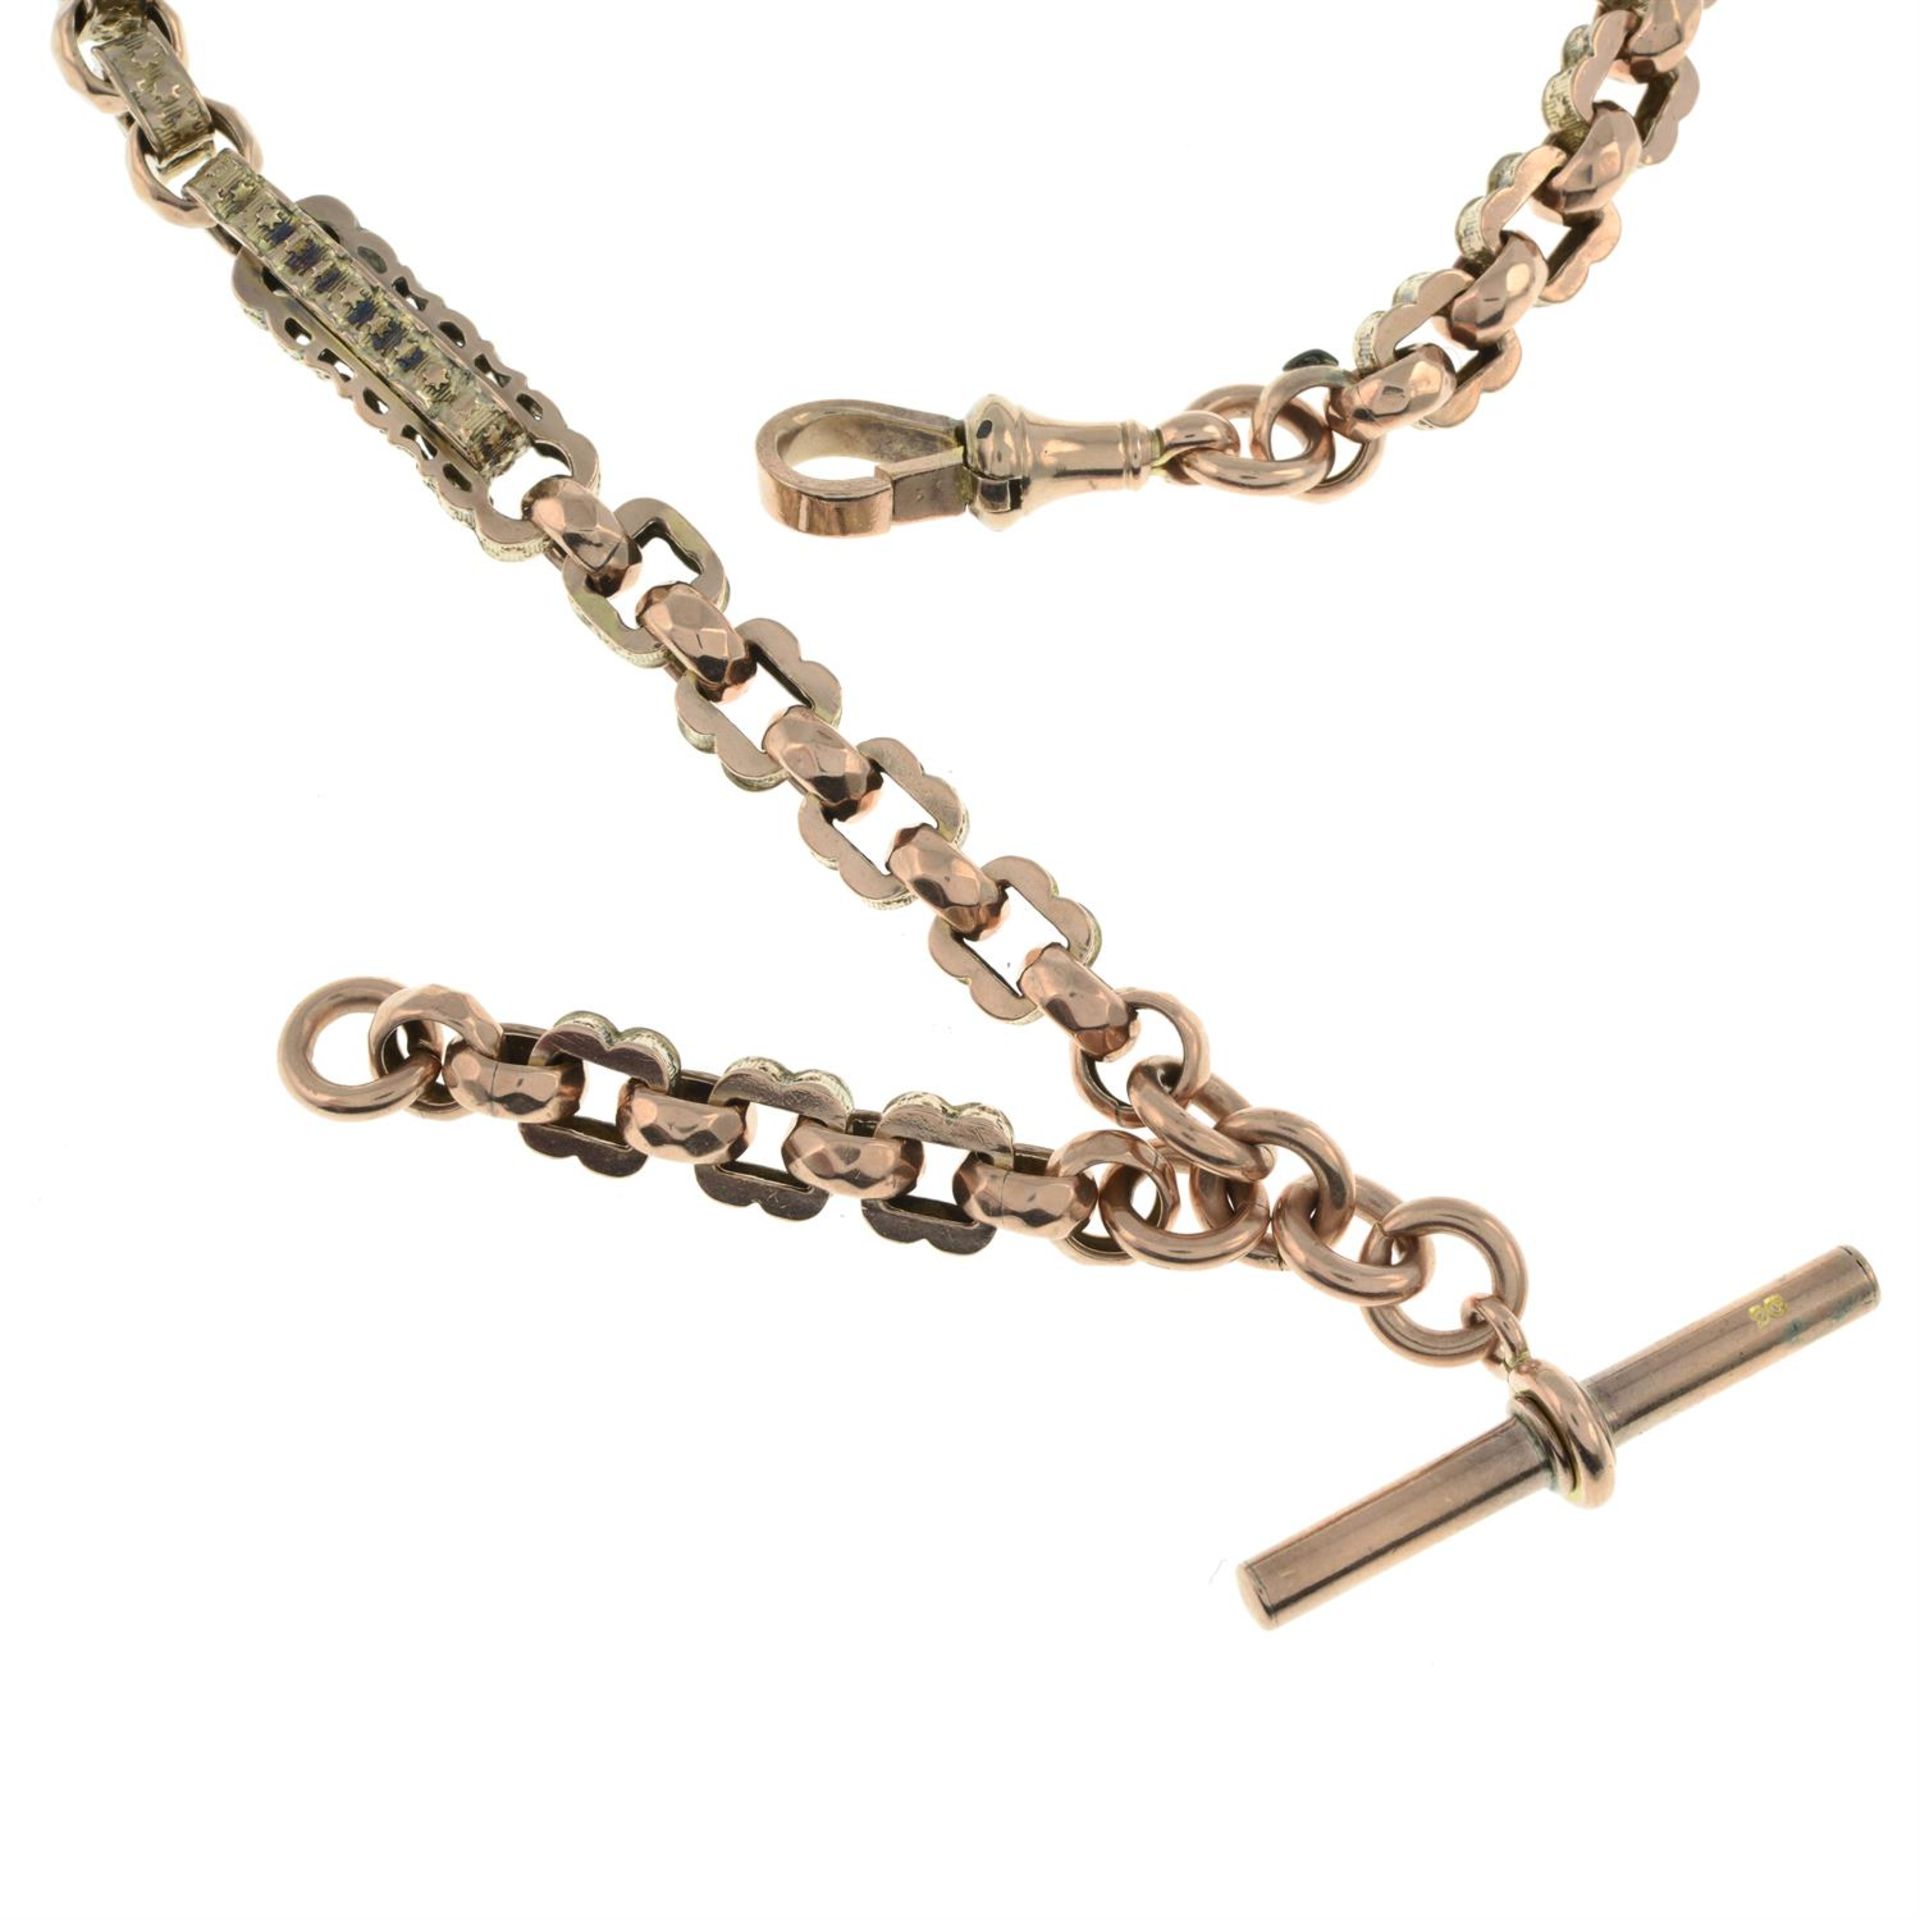 Fancy-link Albert chain - Image 2 of 2